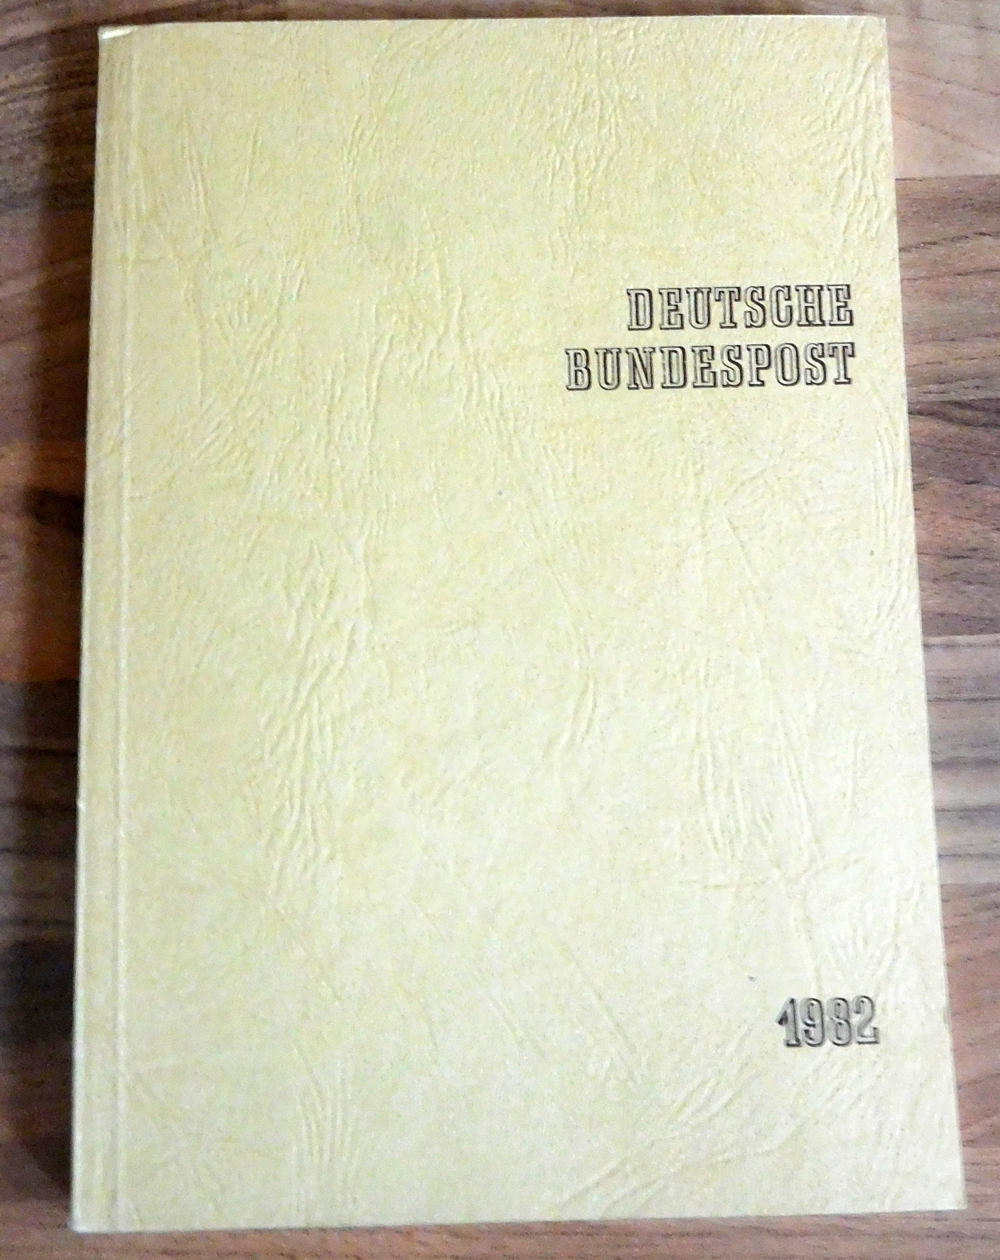 Jahrbuch Die Postwertzeichen der deutschen Bundespost 1982